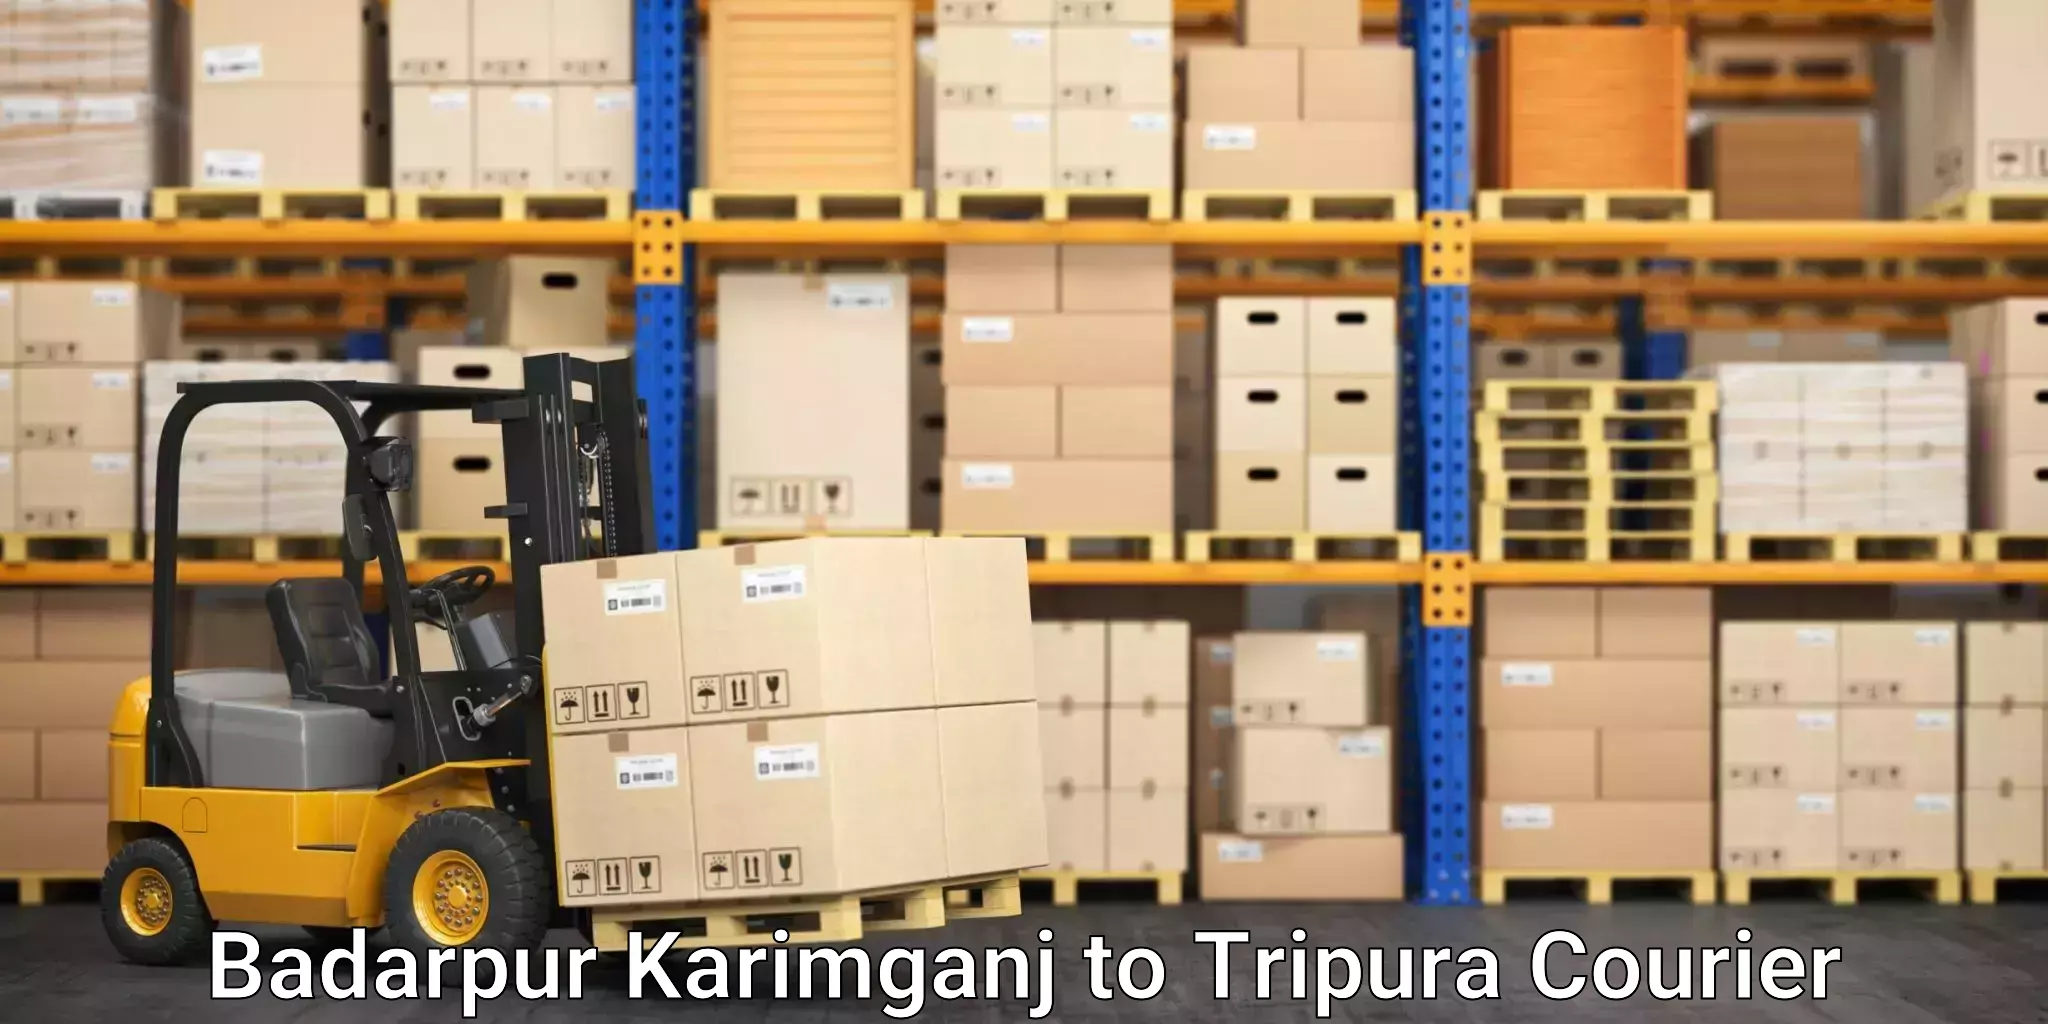 Parcel delivery automation Badarpur Karimganj to Amarpur